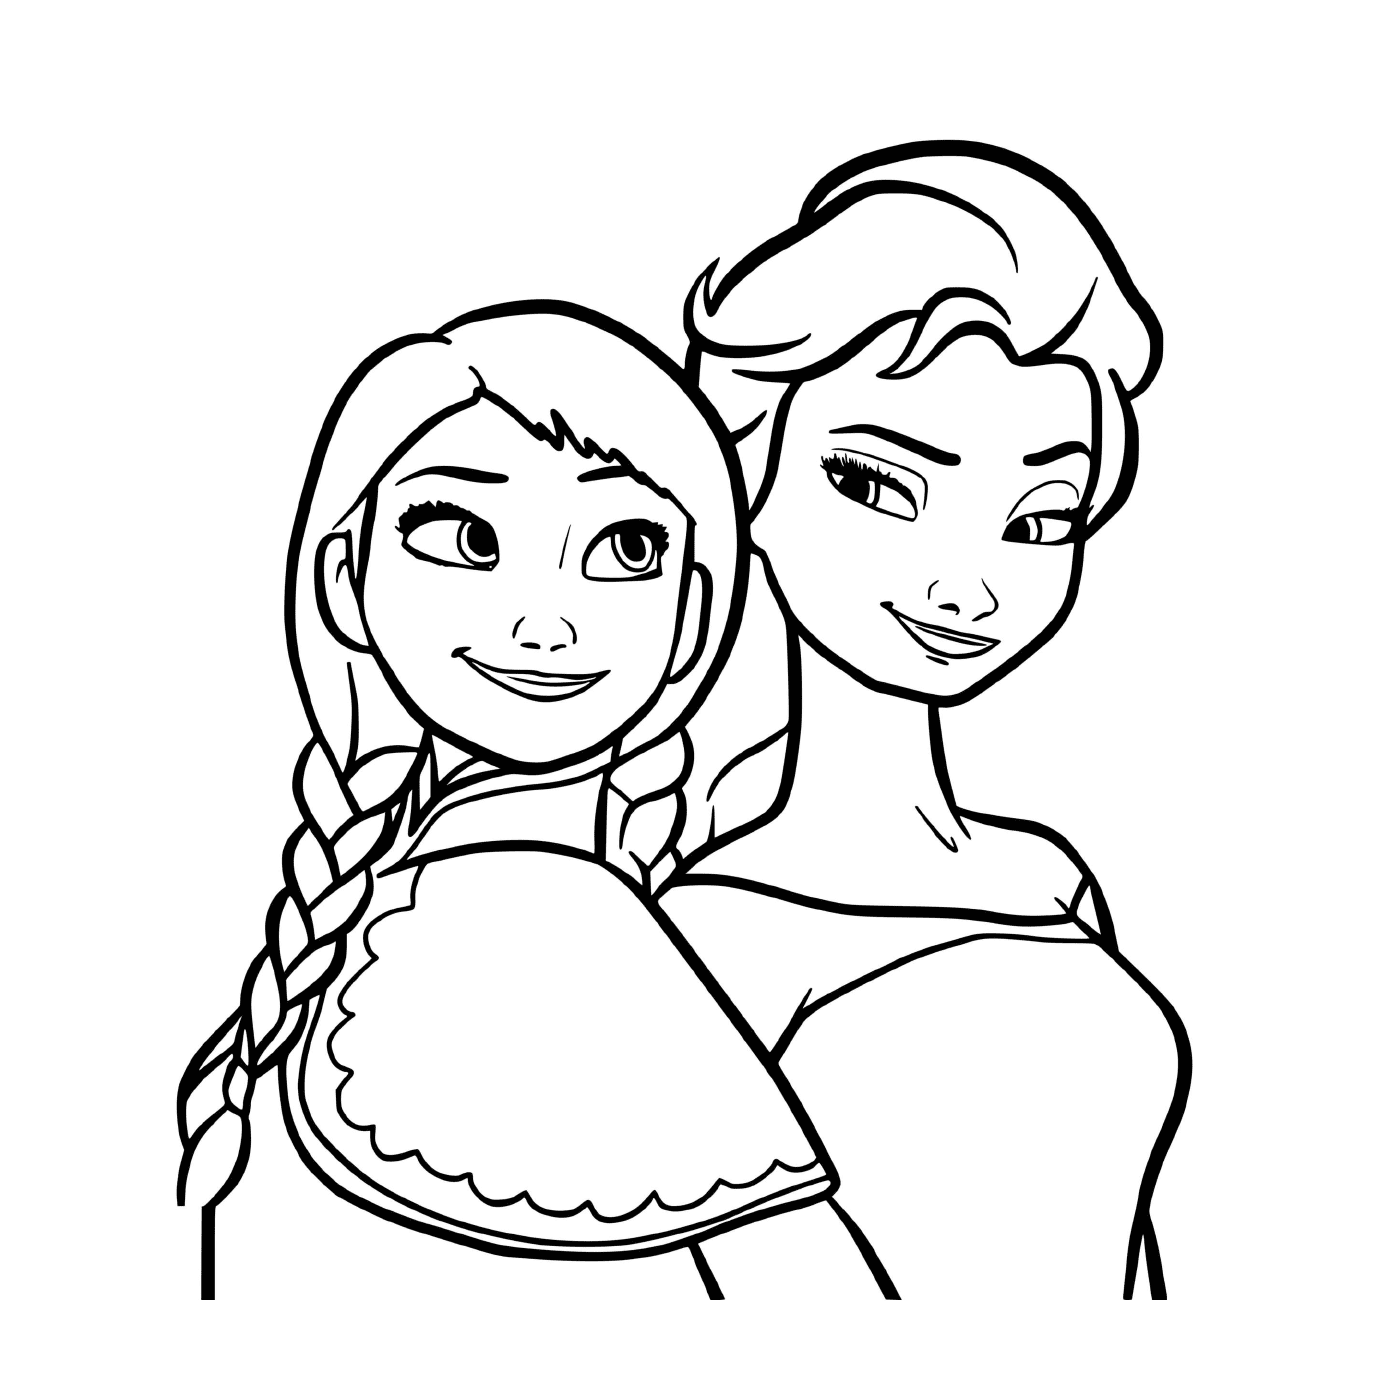   Les princesses du royaume, Elsa et Anna 